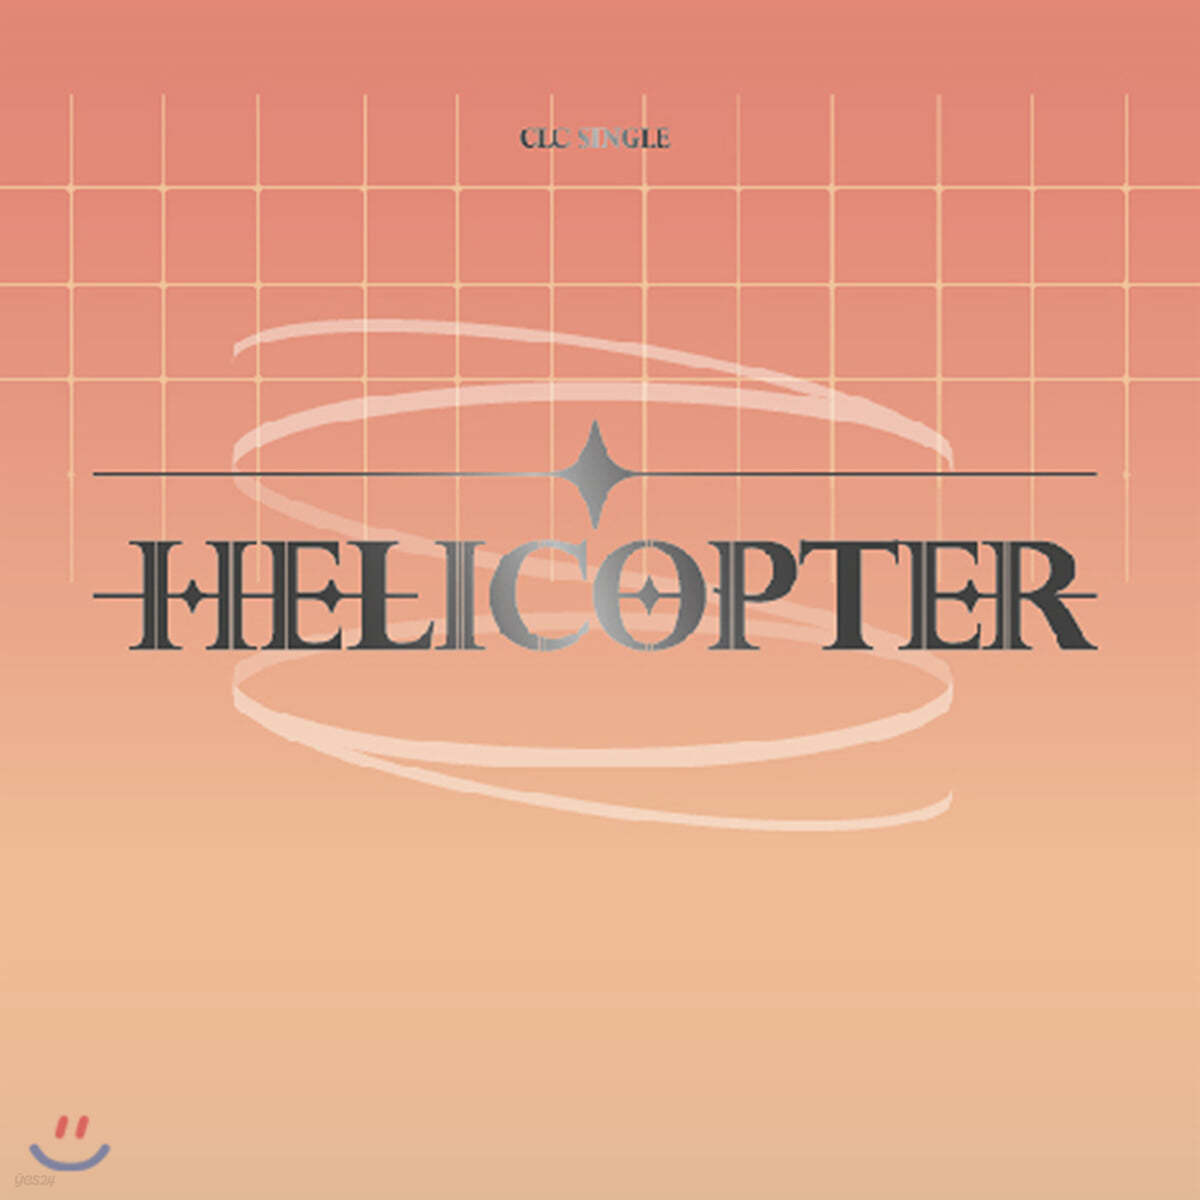 씨엘씨 (CLC) - HELICOPTER